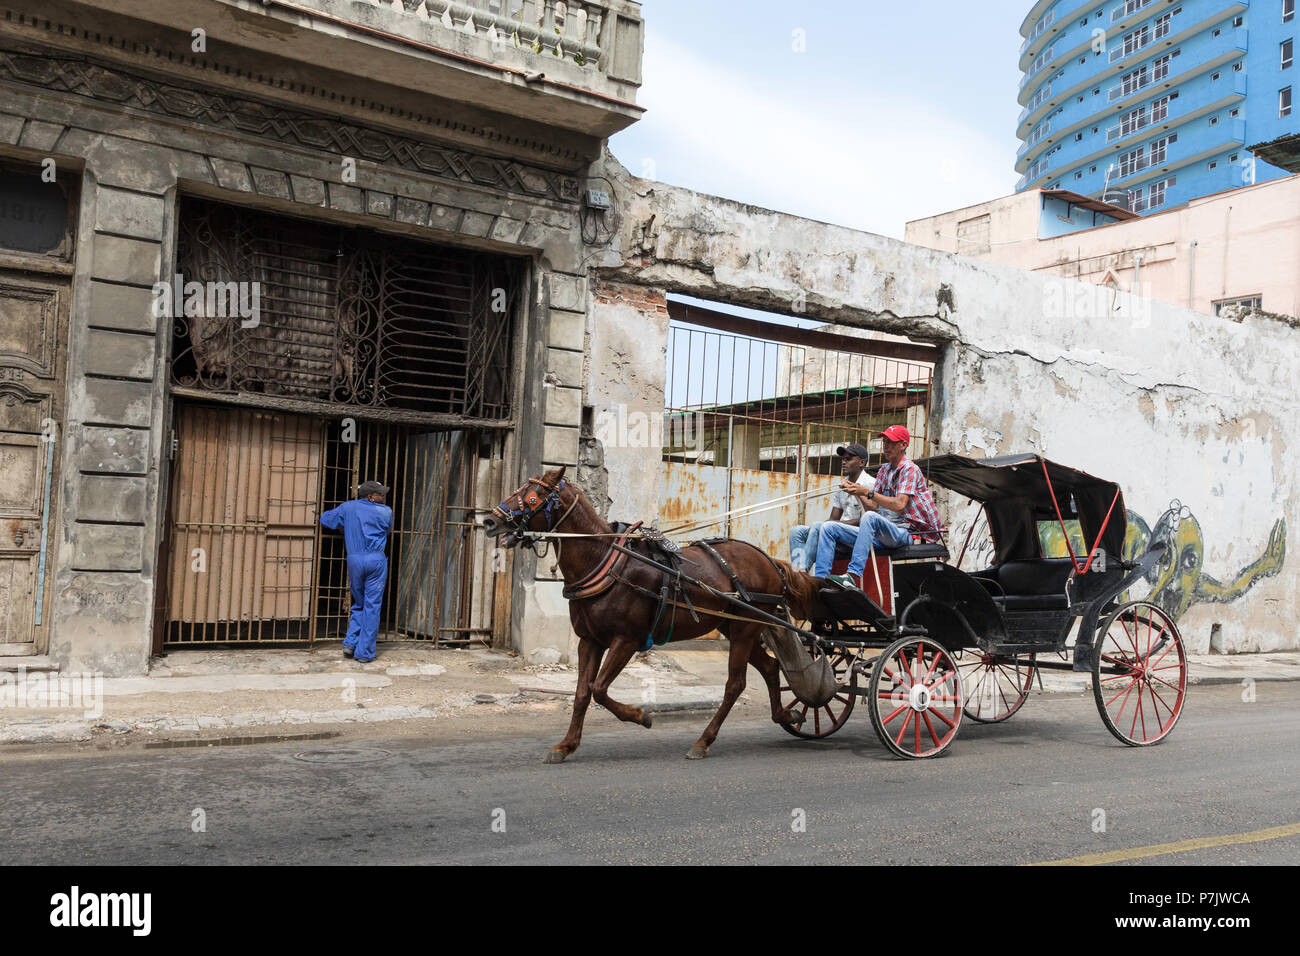 Las carretas tiradas por caballos, conocida localmente como coches para alquilar en La Habana, Cuba Foto de stock